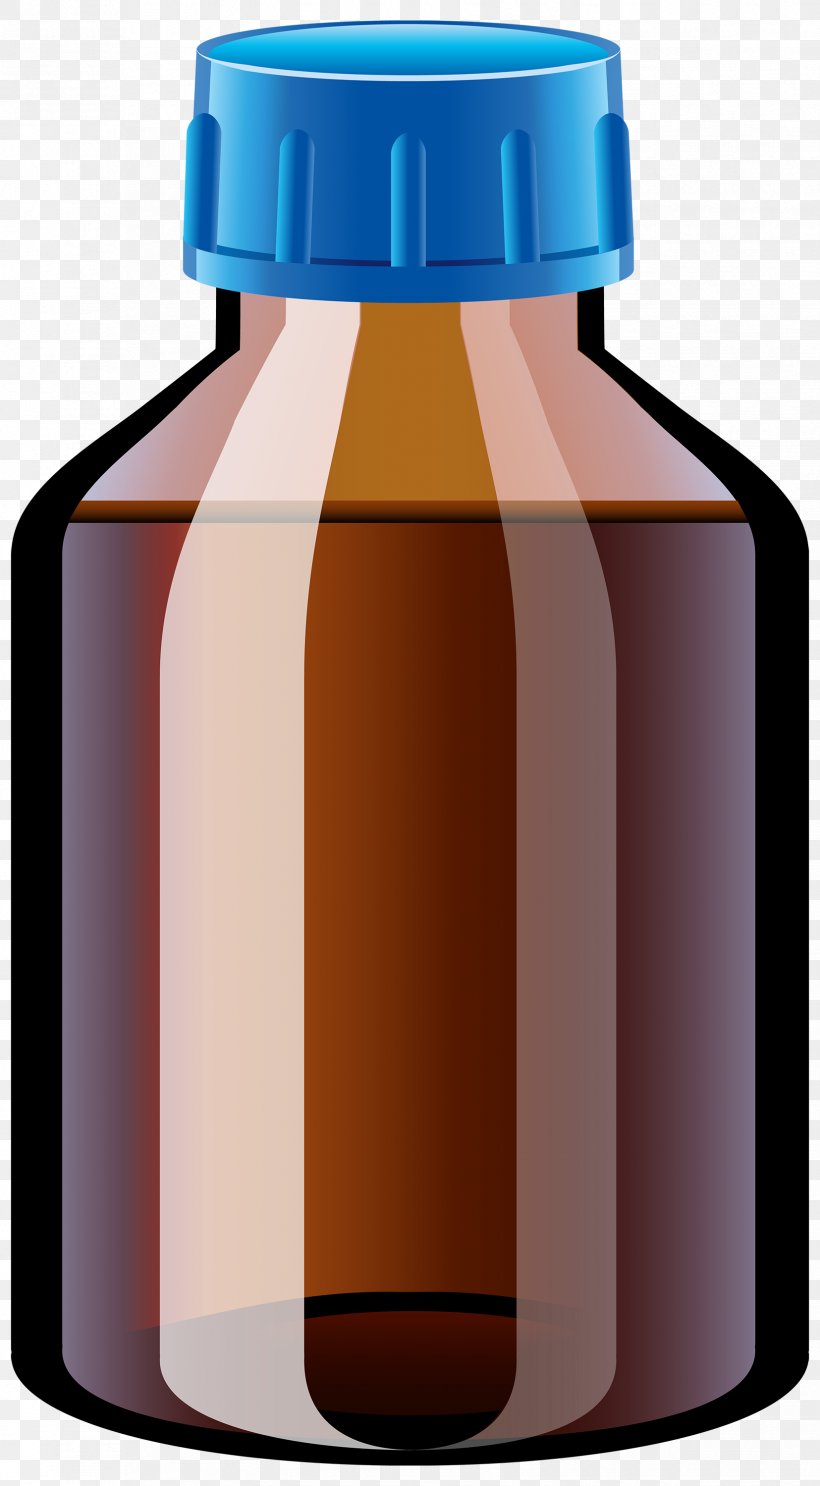 Pharmaceutical Drug Tablet Bottle Clip Art, PNG, 1655x3000px, Pharmaceutical Drug, Bottle, Caramel Color, Childresistant Packaging, Cough Medicine Download Free